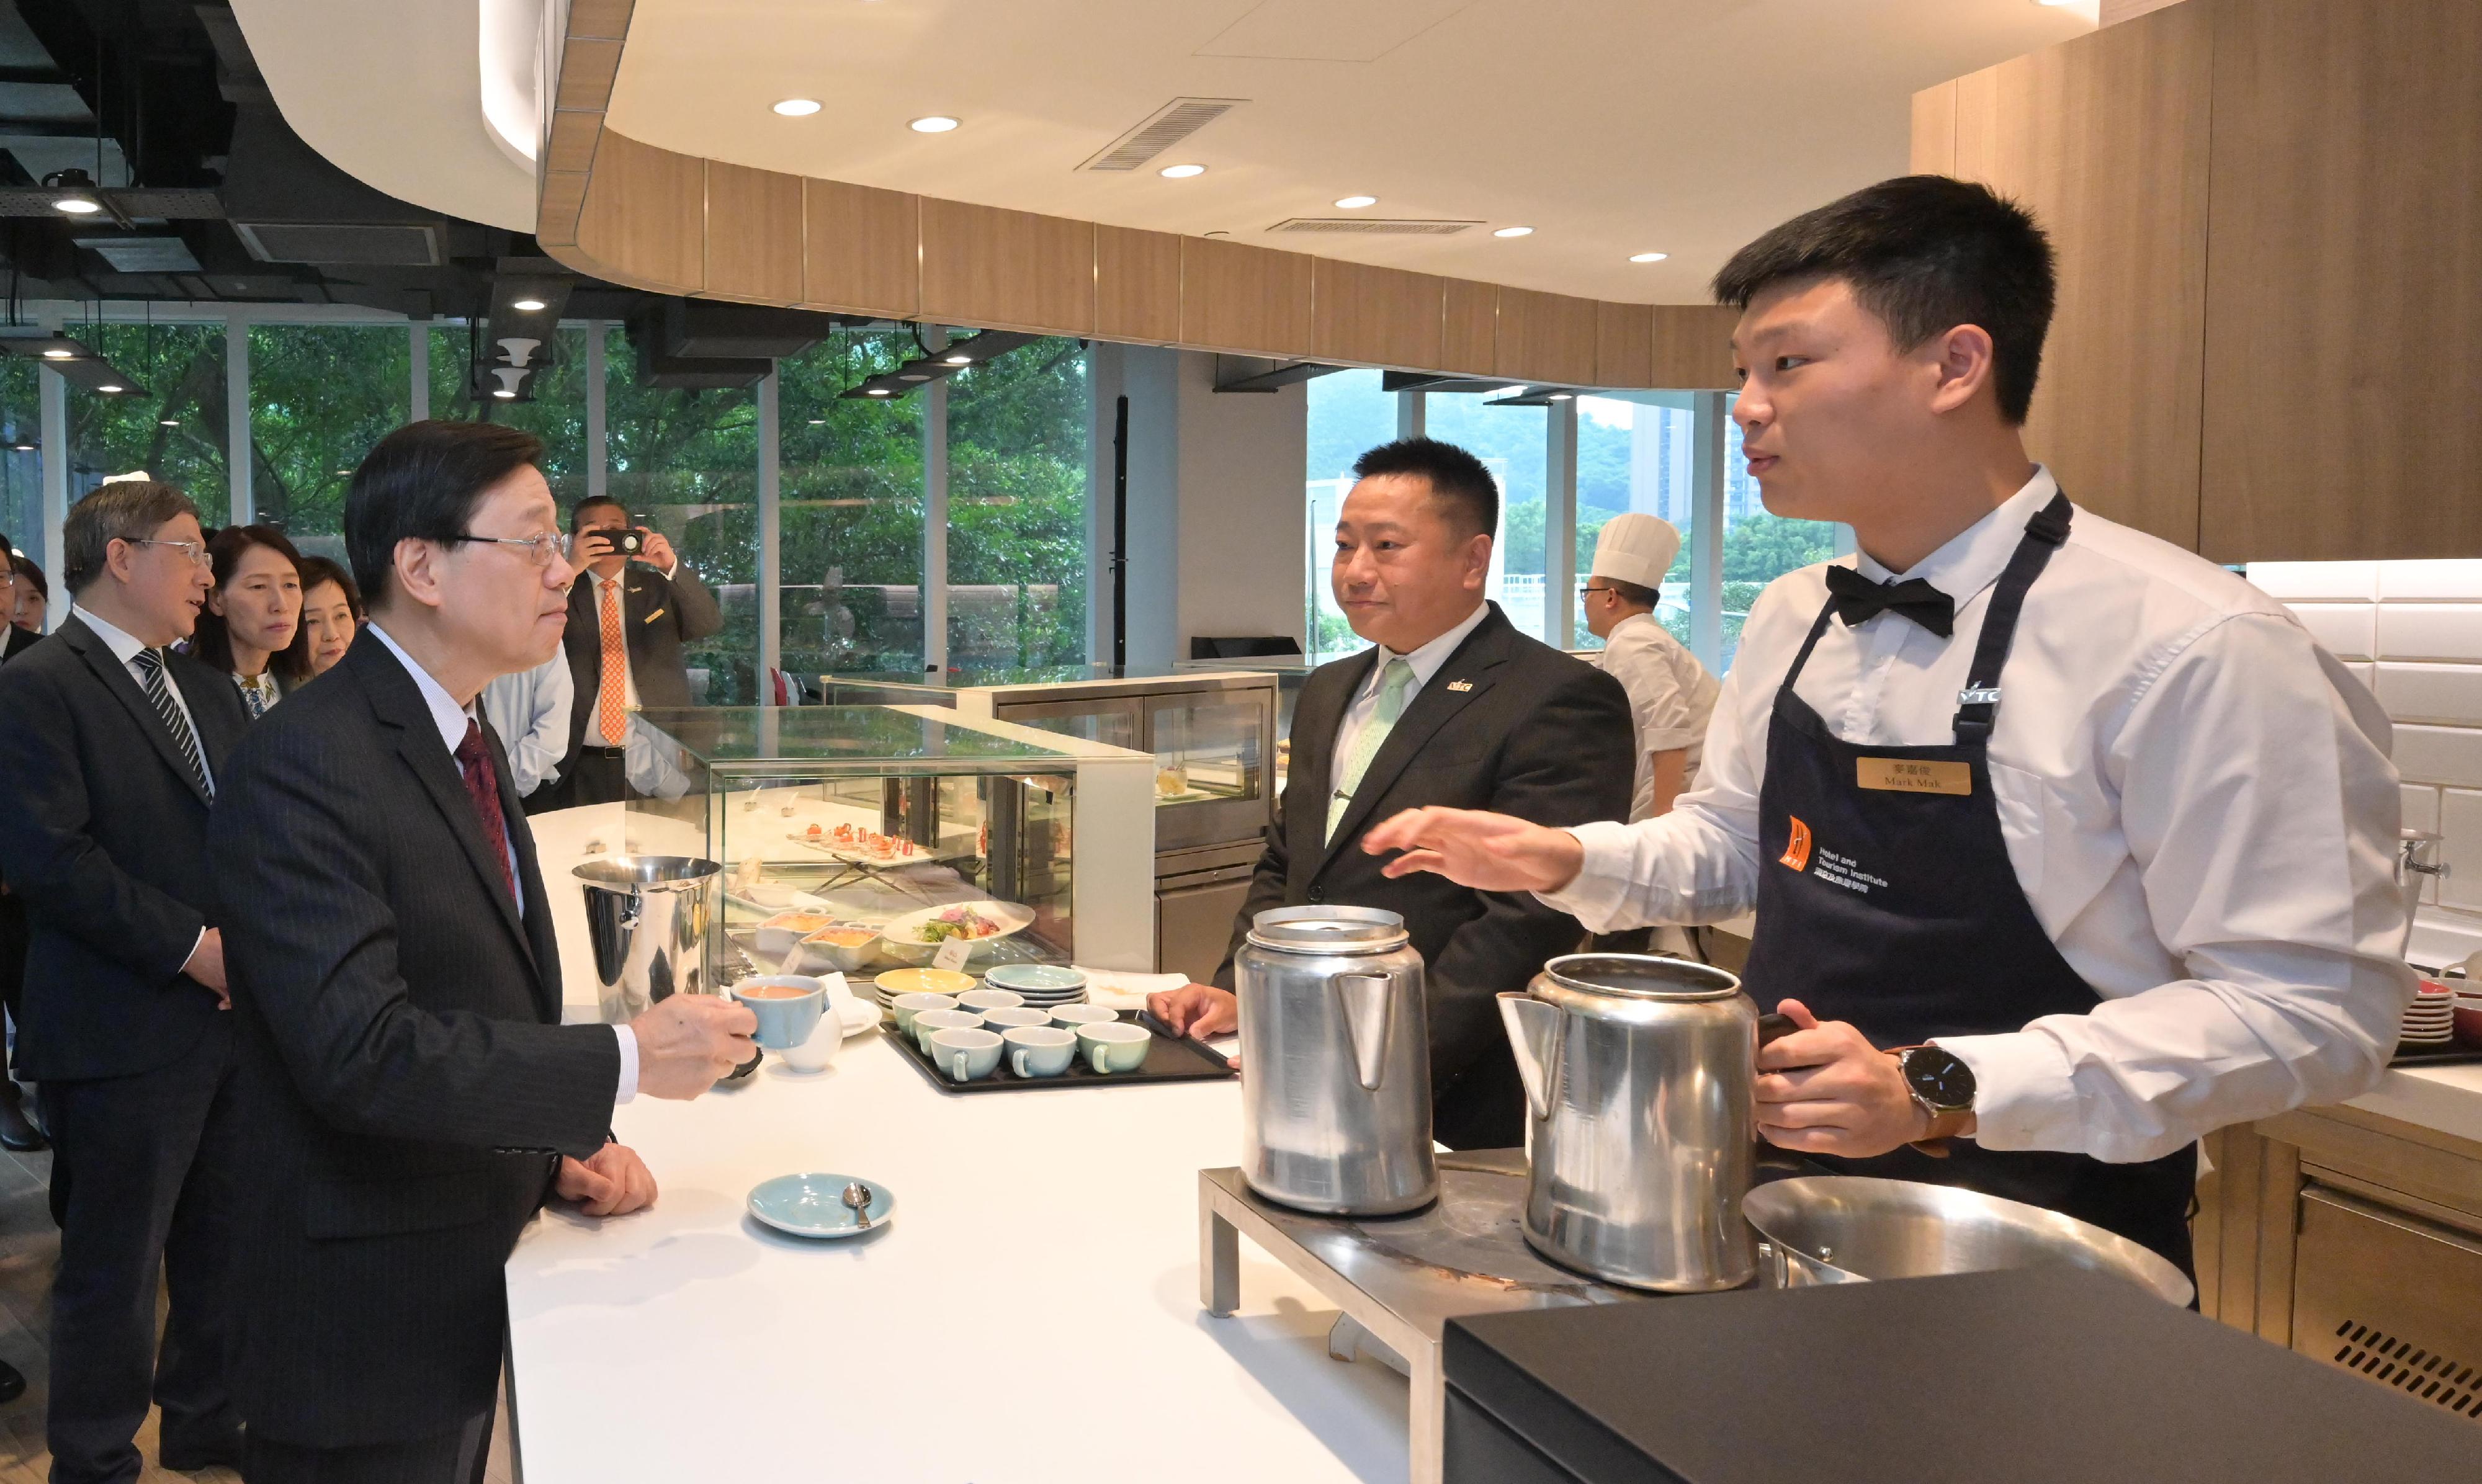 行政長官李家超今日（八月十七日）到訪職業訓練局轄下的國際廚藝學院。圖示李家超（前排左一）品嚐由學員沖泡的奶茶。